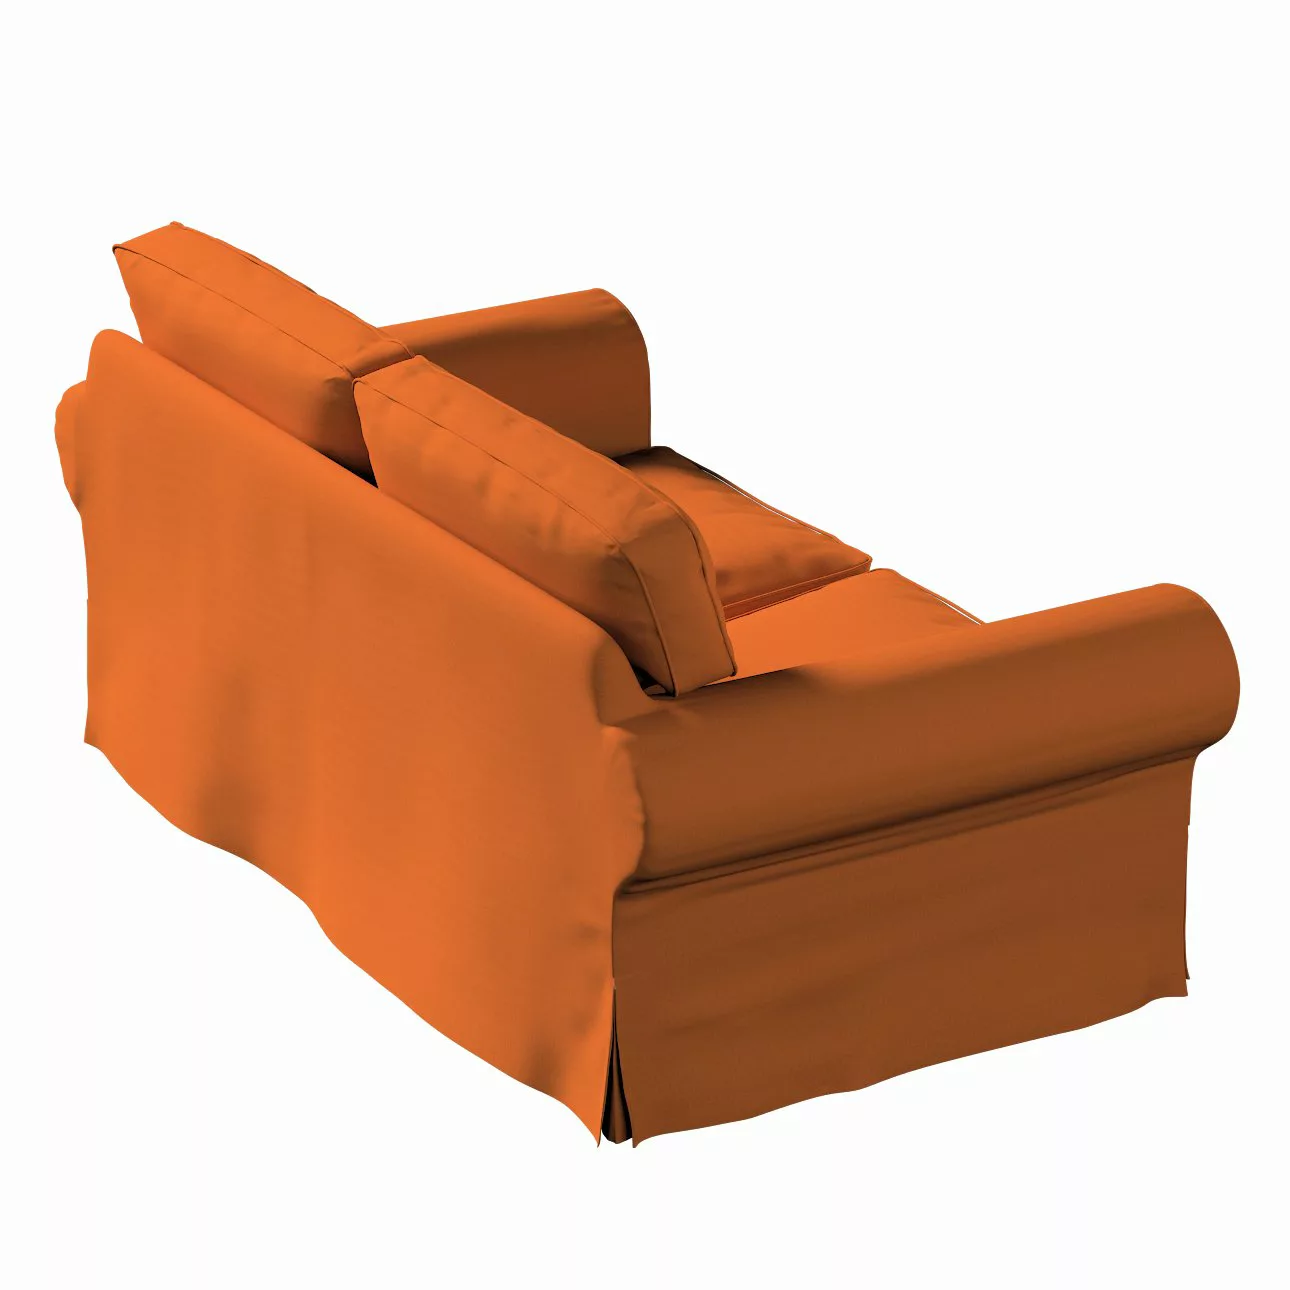 Bezug für Ektorp 2-Sitzer Schlafsofa NEUES Modell, Karamell, Sofabezug für günstig online kaufen